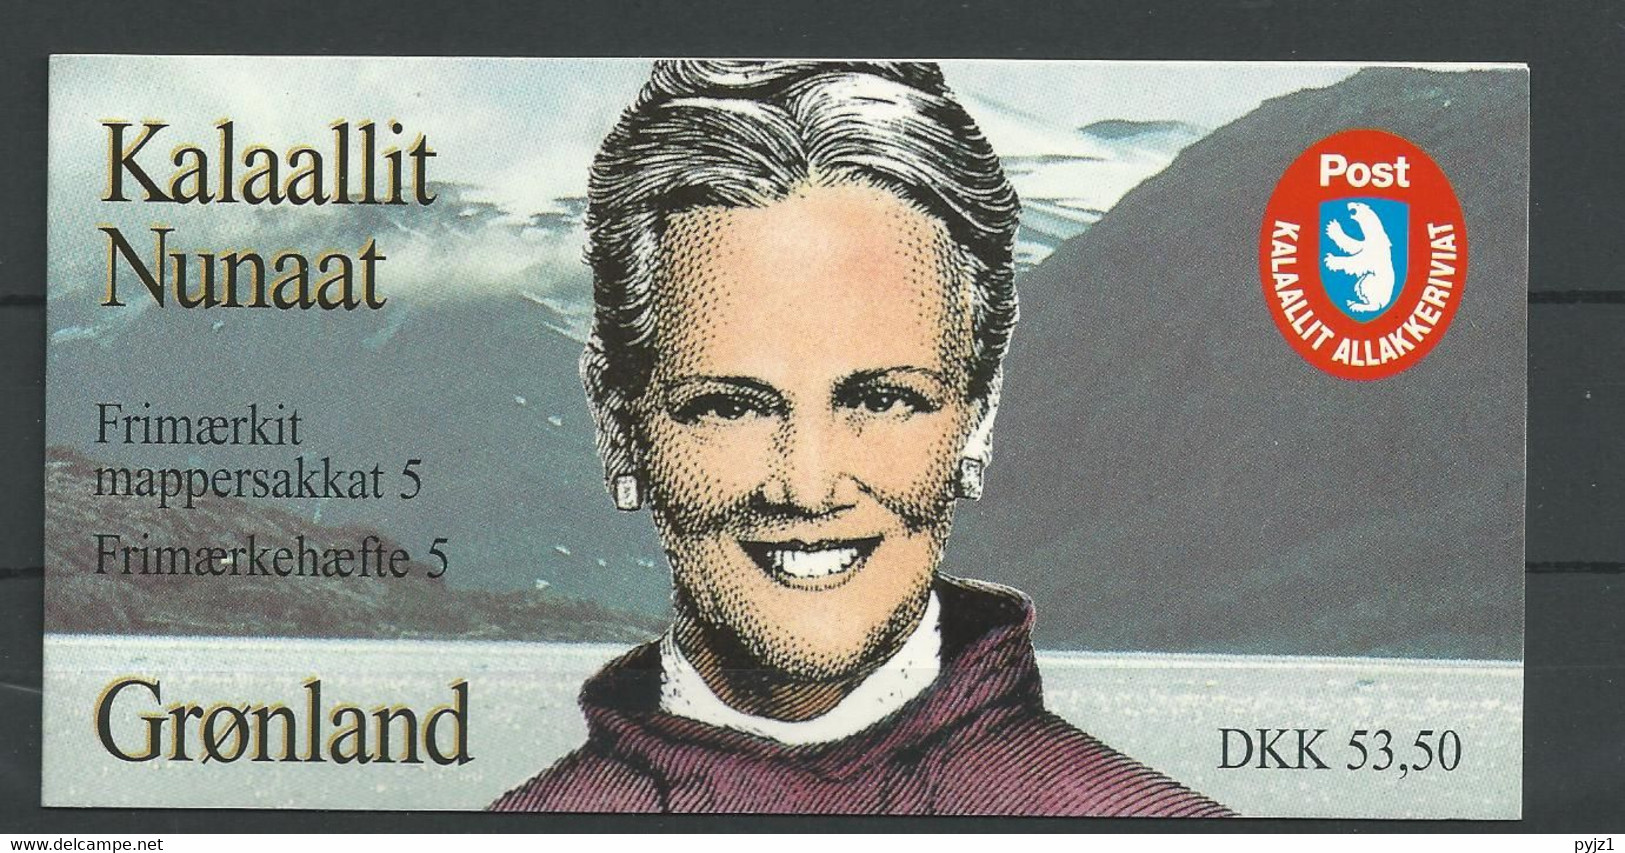 1997 MNH Greenland, Booklet Mi MH7 Postfris** - Markenheftchen